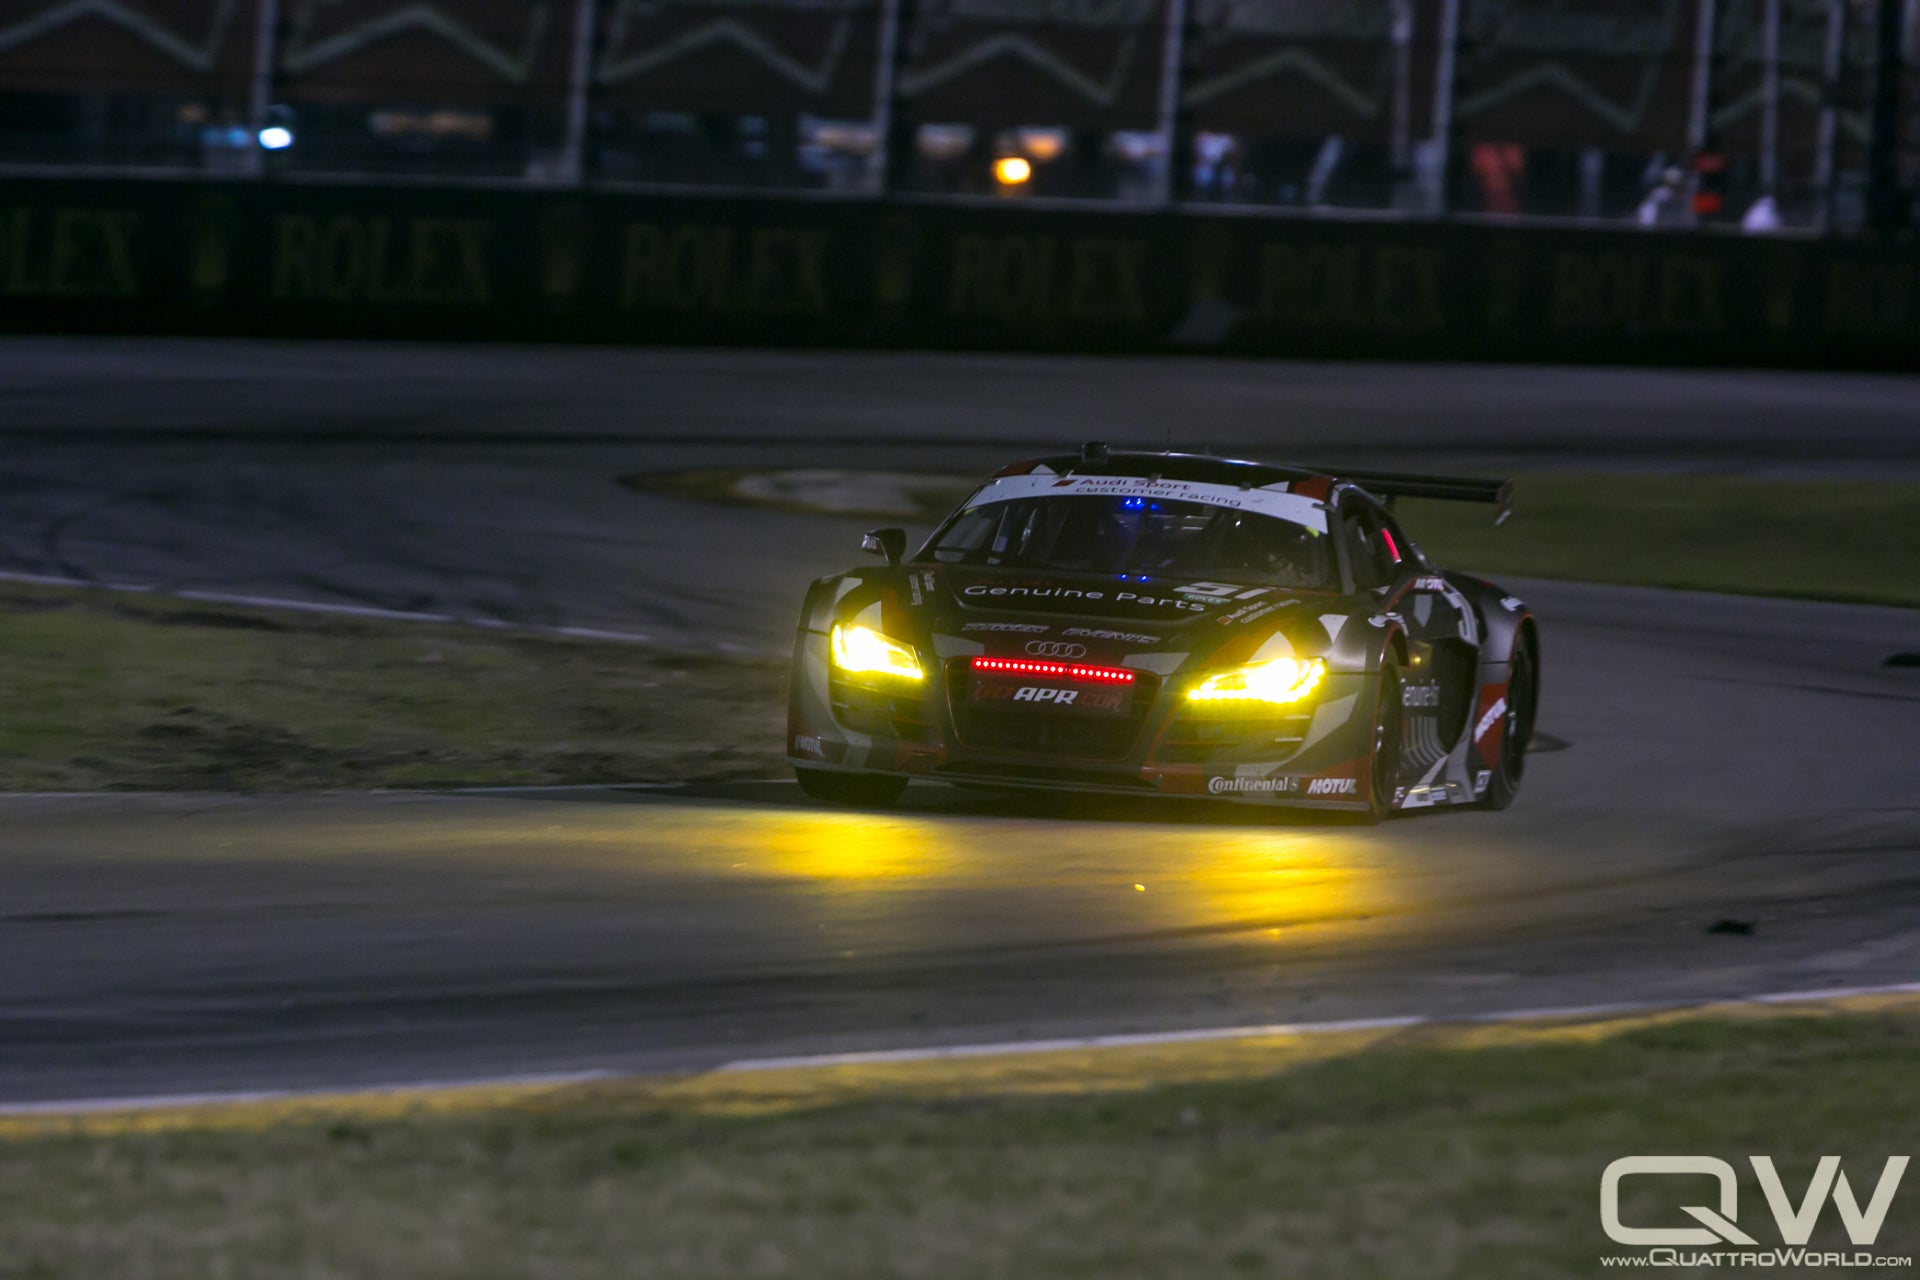 2013 Rolex 24 at Daytona - Saturday Night Update and 